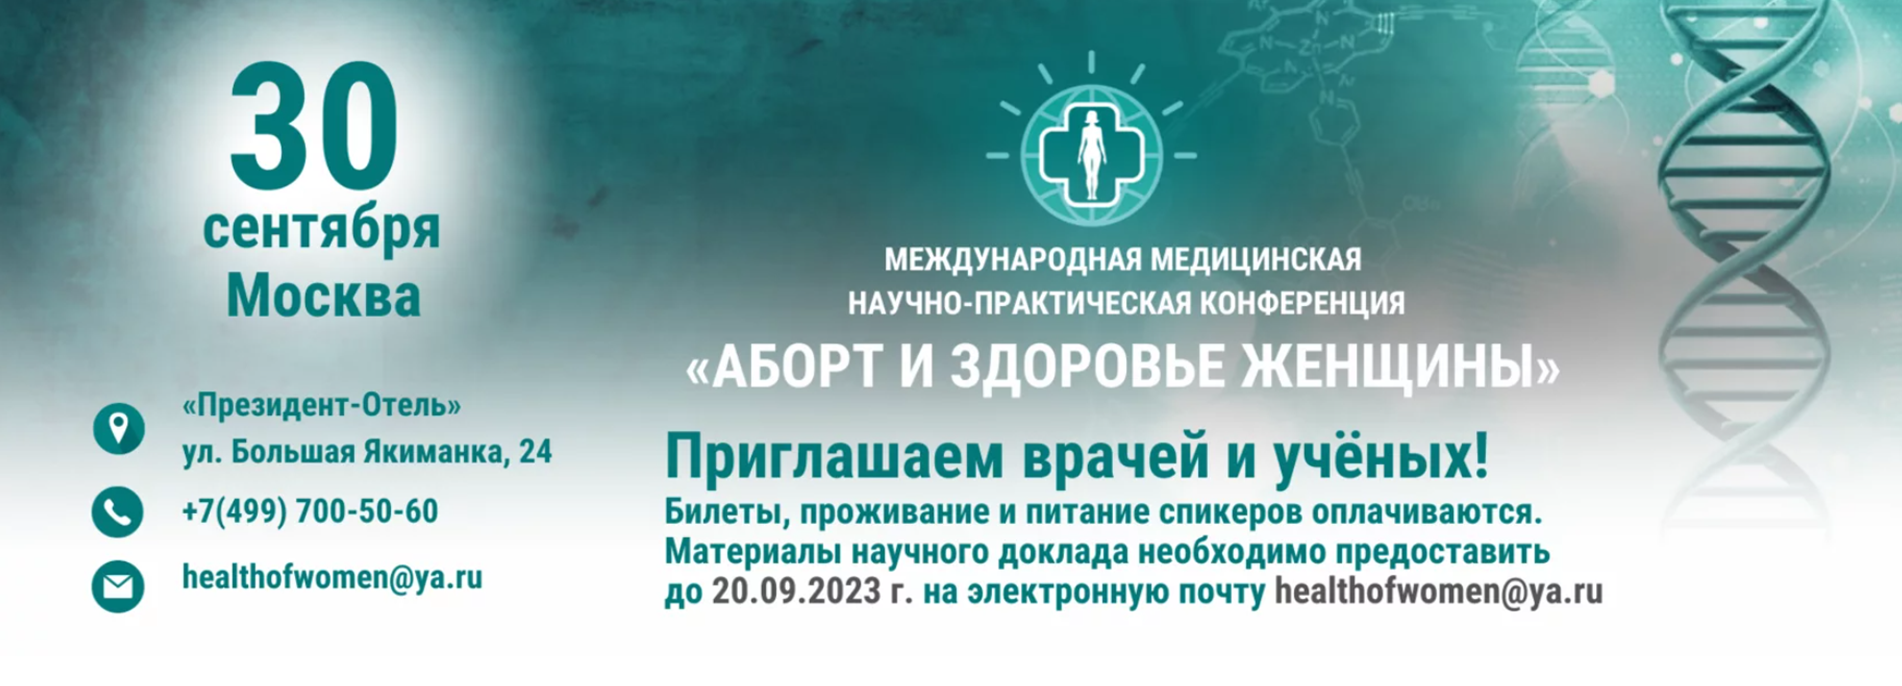 В Москве пройдет конференция о последствиях абортов для здоровья женщин